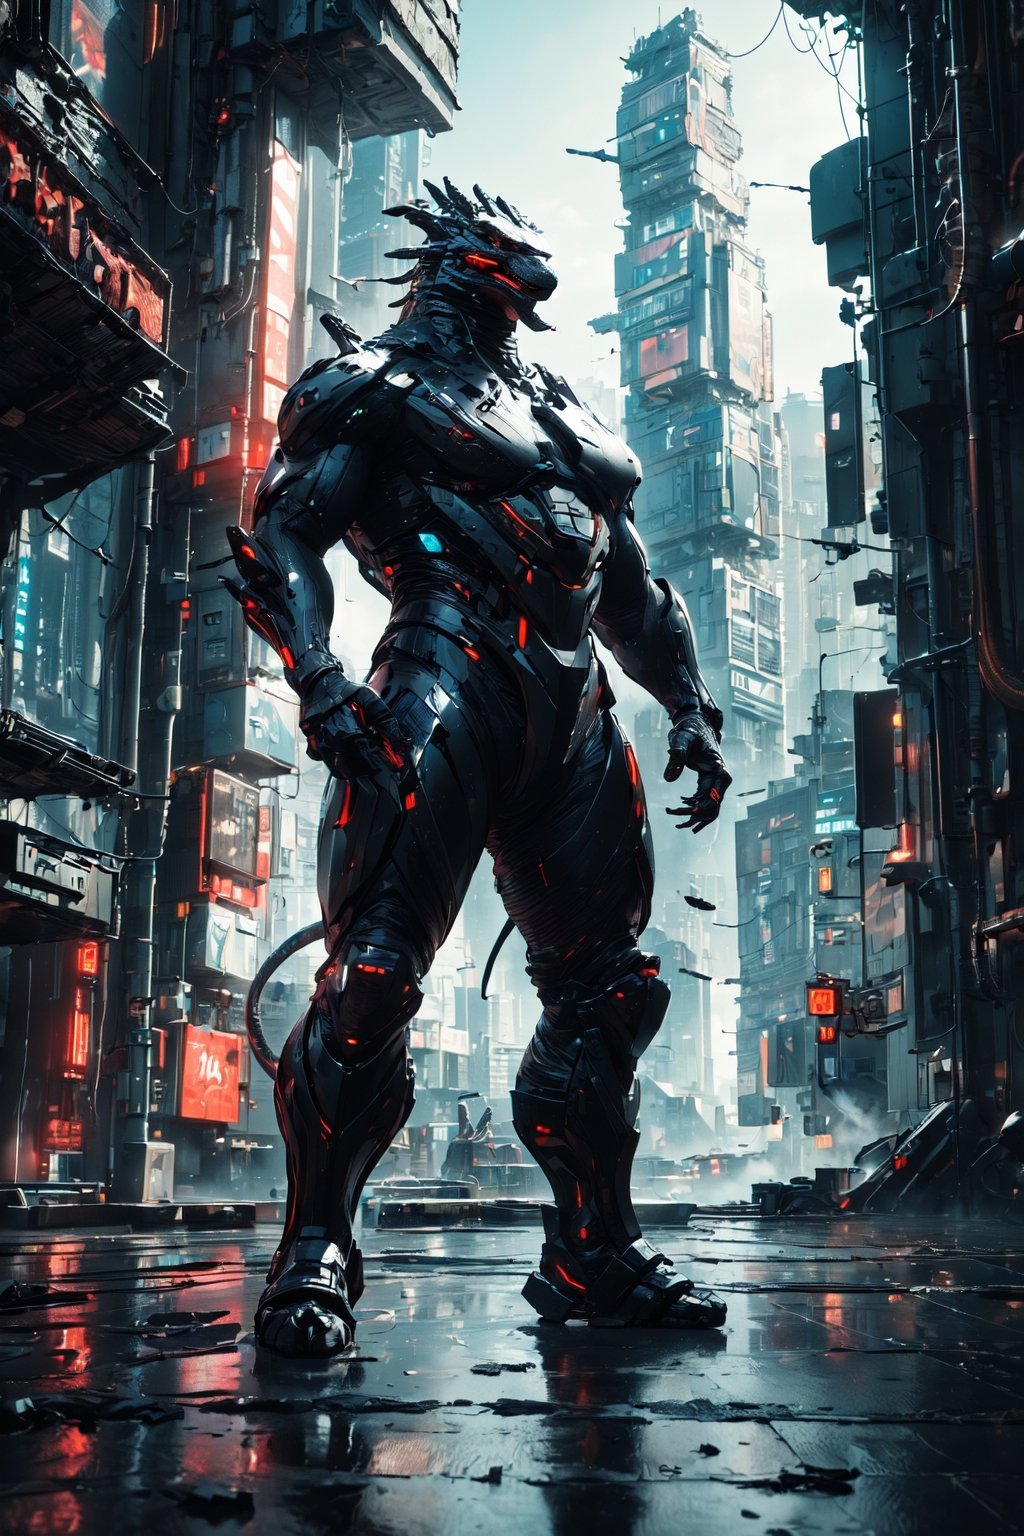 (Masterpiece:1.5), (Best quality:1.5), Cyberpunk style, full body, Godzilla, huge tail, facing the viewer, Godzilla tail, roar, laser, daytime, Doton, Cyberpunk